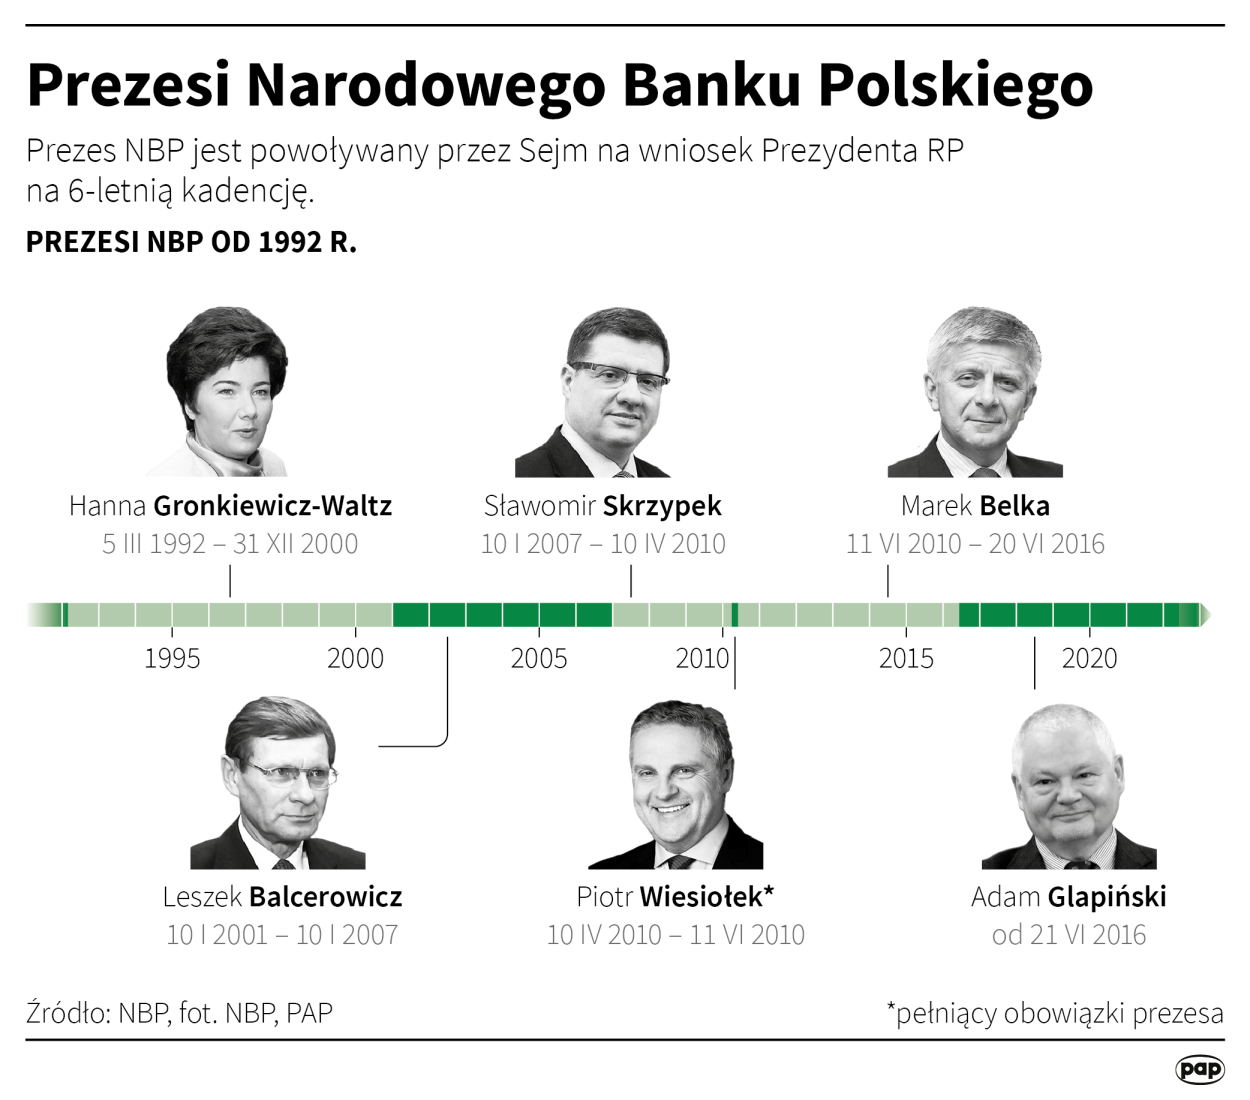 Prezesi Narodowego Banku Polskiego. Autorzy:  Maciej Zieliński , Adam Ziemienowicz 